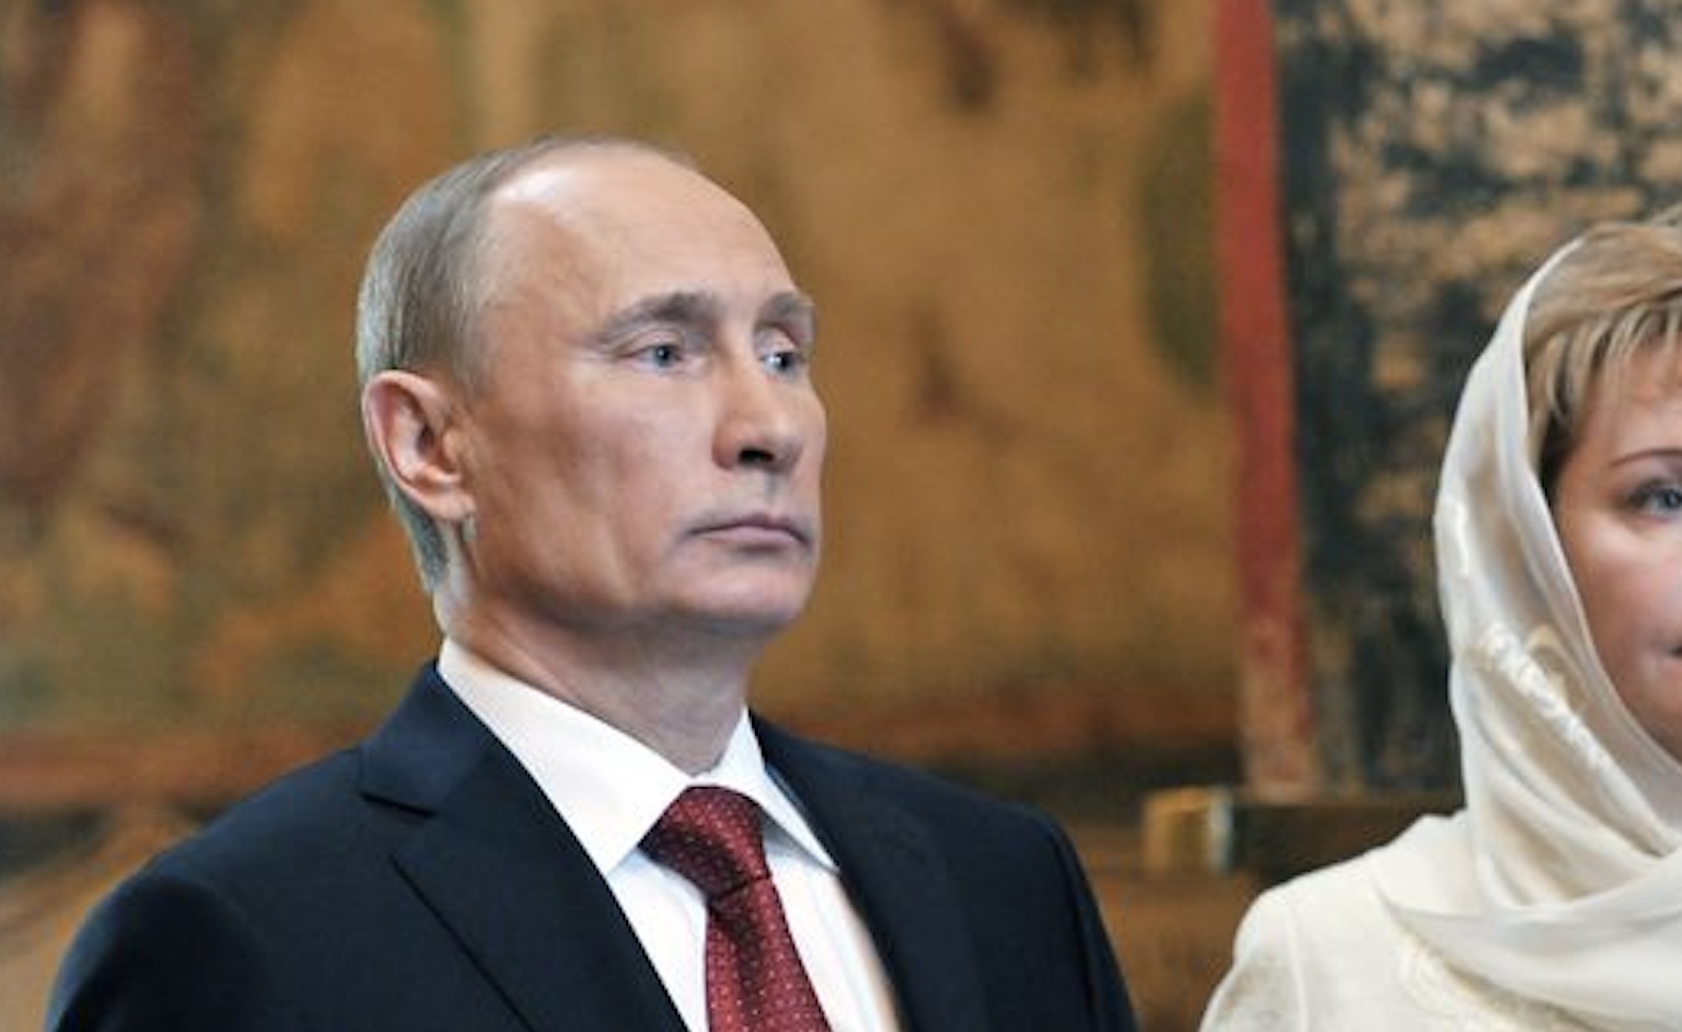 Vladimir Poetin dondert van de trap en raakt gewond